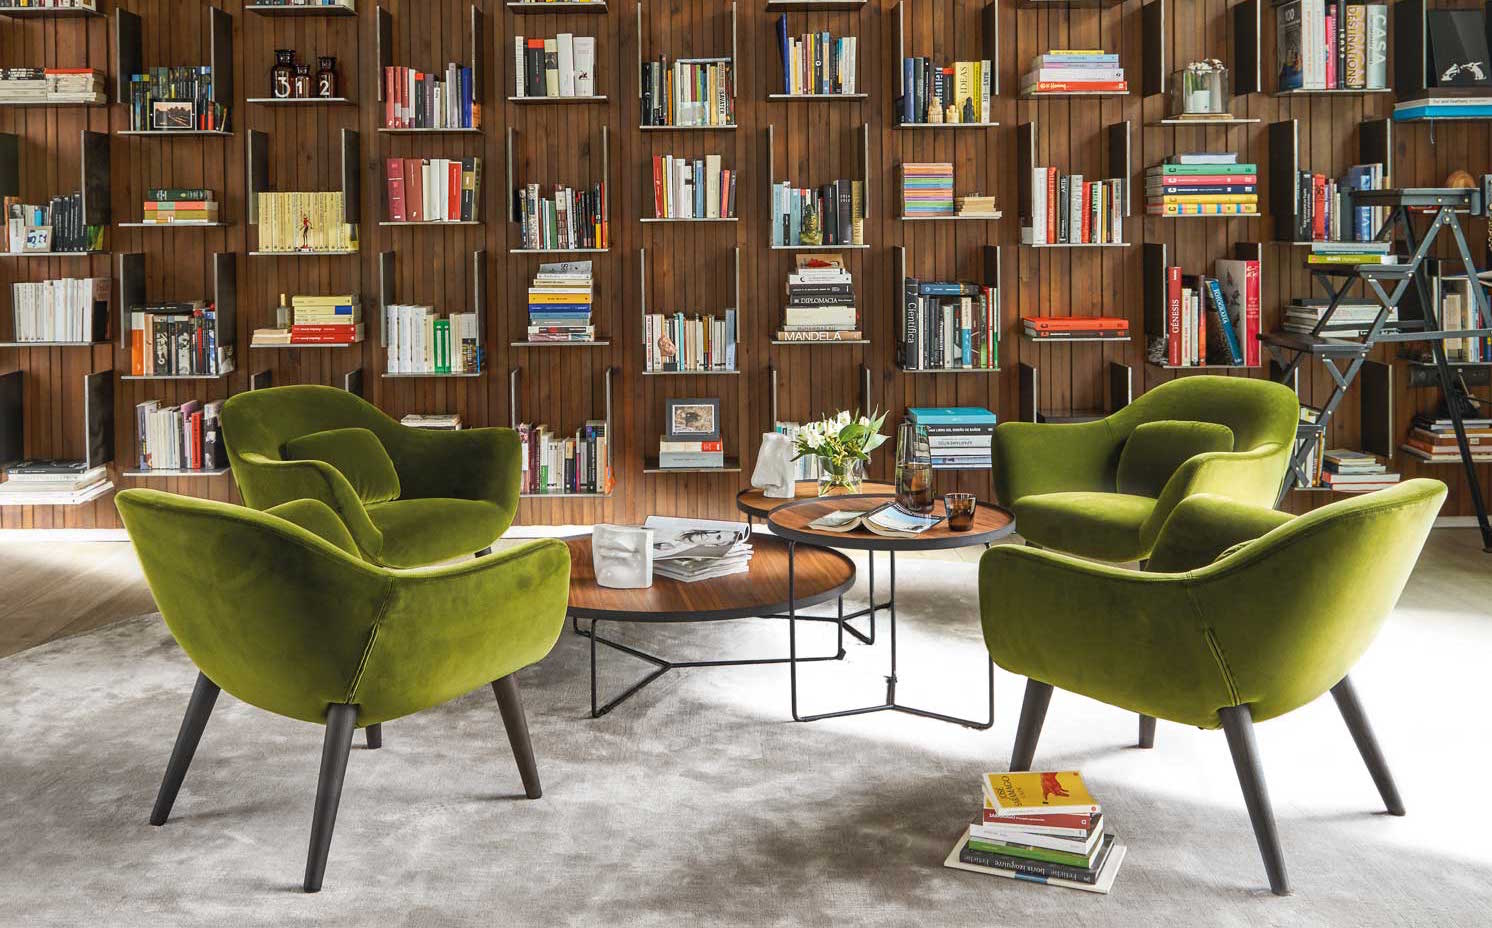 00445710. La librería que protagoniza este ambiente es un diseño de los arquitectos, hecha a medida con madera de nogal Canaletto. Las butacas son el modelo Mad, de Marcel Wanders para Poliform, tapizadas con terciopelo verde oliva. Como gran parte del mobiliario, proceden de Gunni & Trentino